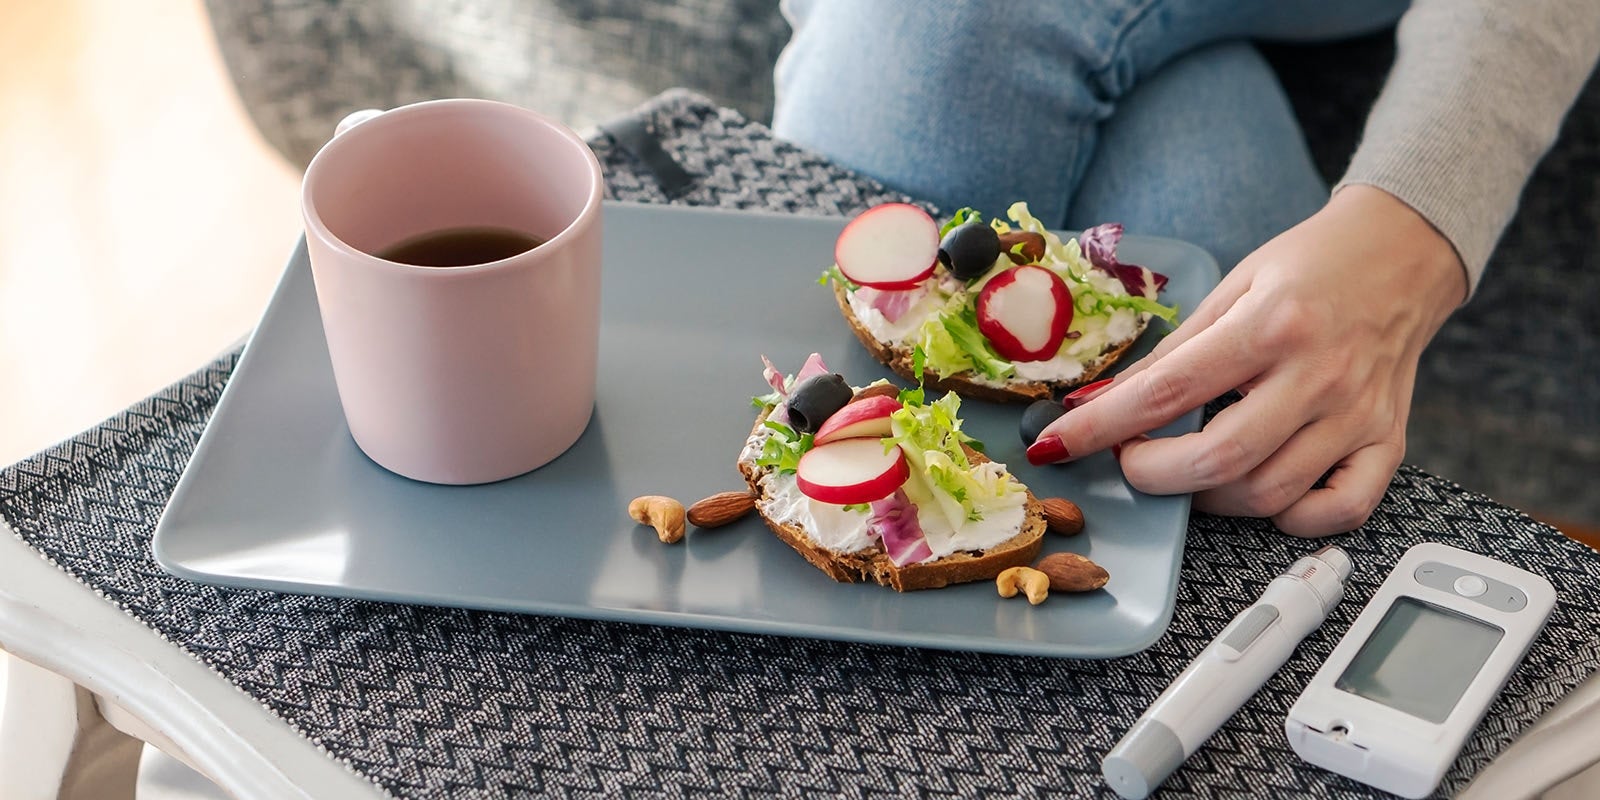 Ein Frühstücksteller mit belegtem Brot und Kaffee, daneben liegt das Blutzuckermessgerät.